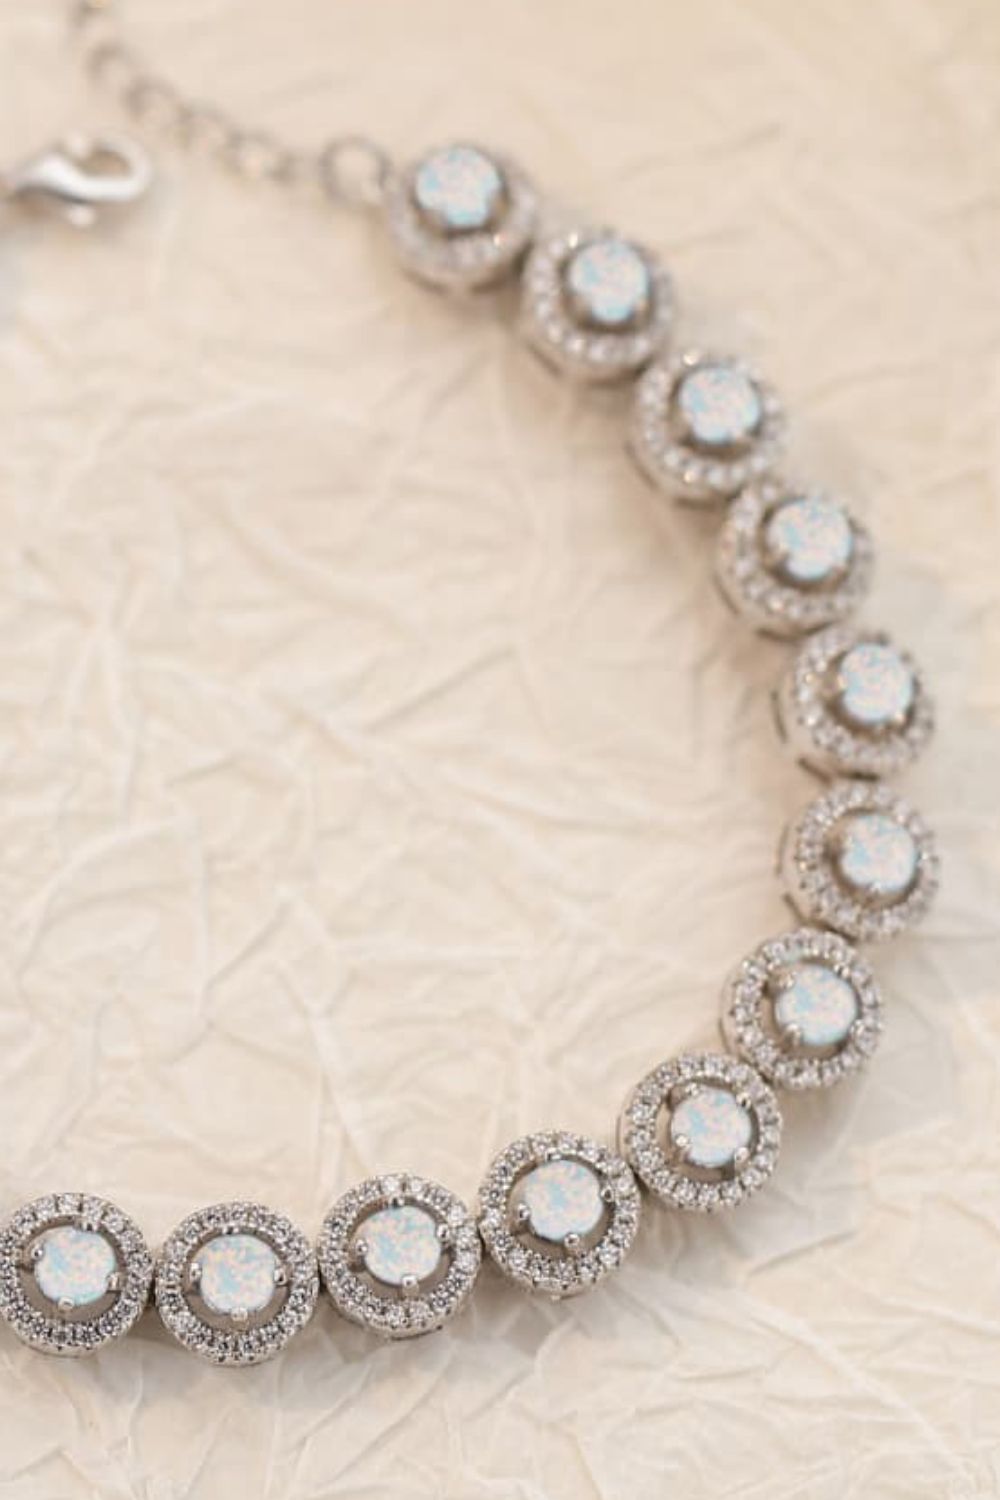 My Own Way Opal Bracelet - Women’s Jewelry - Bracelets - 7 - 2024